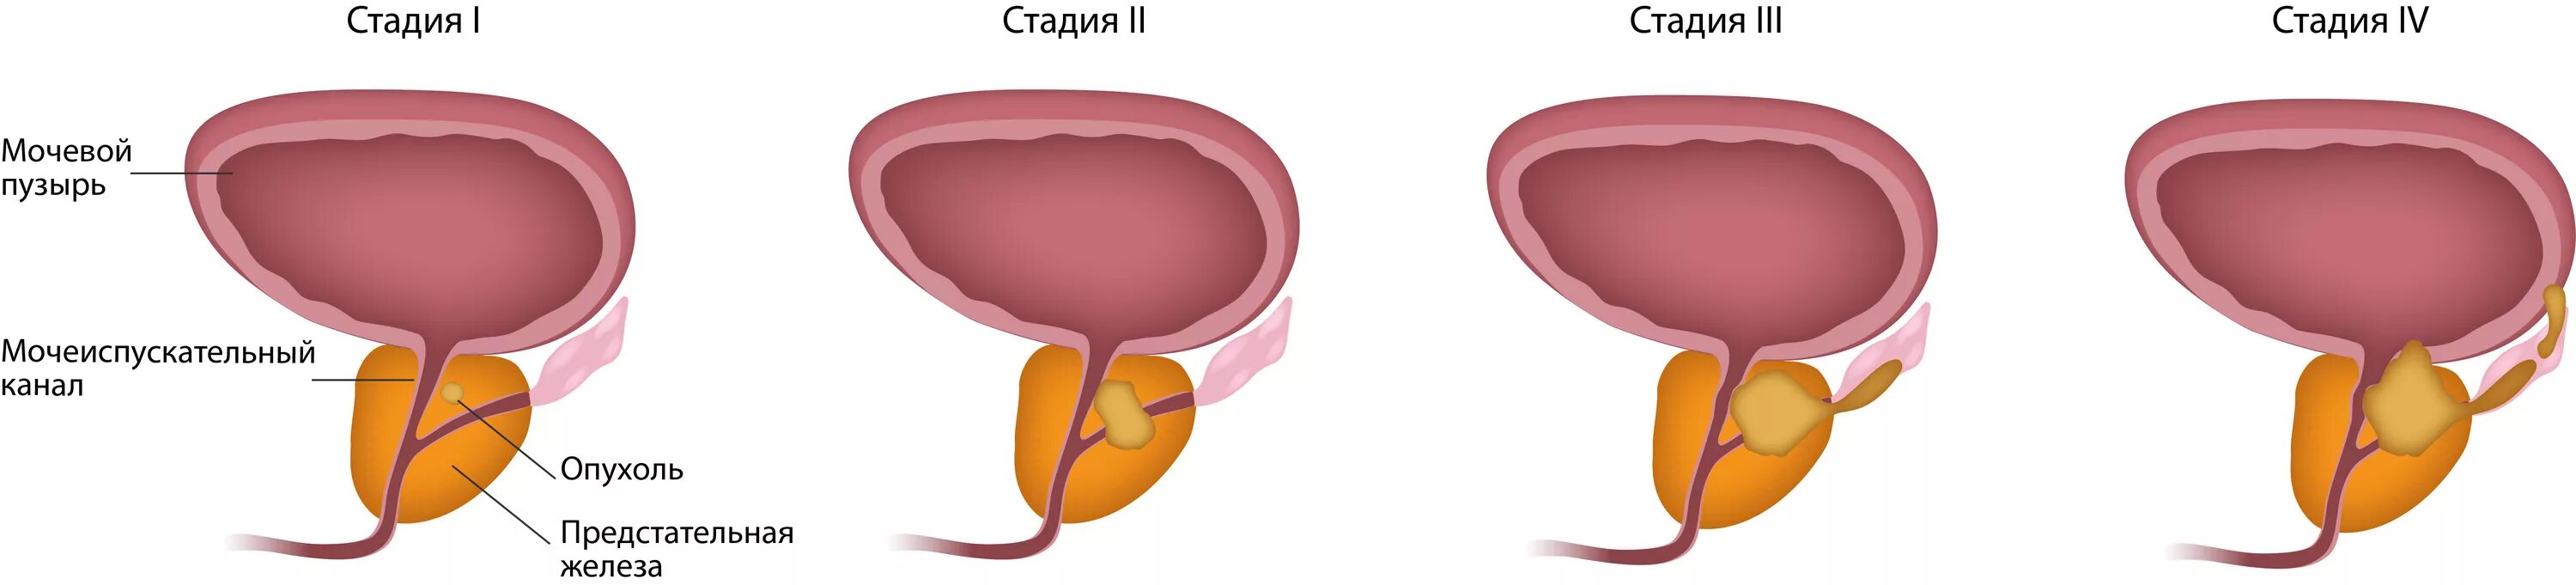 После удаления мочевого пузыря у мужчины. Аденома предстательной железы – это опухоль. Аденома карцинома предстательной железы. Тумор предстательной железы. Этапы развития онкологии простаты.